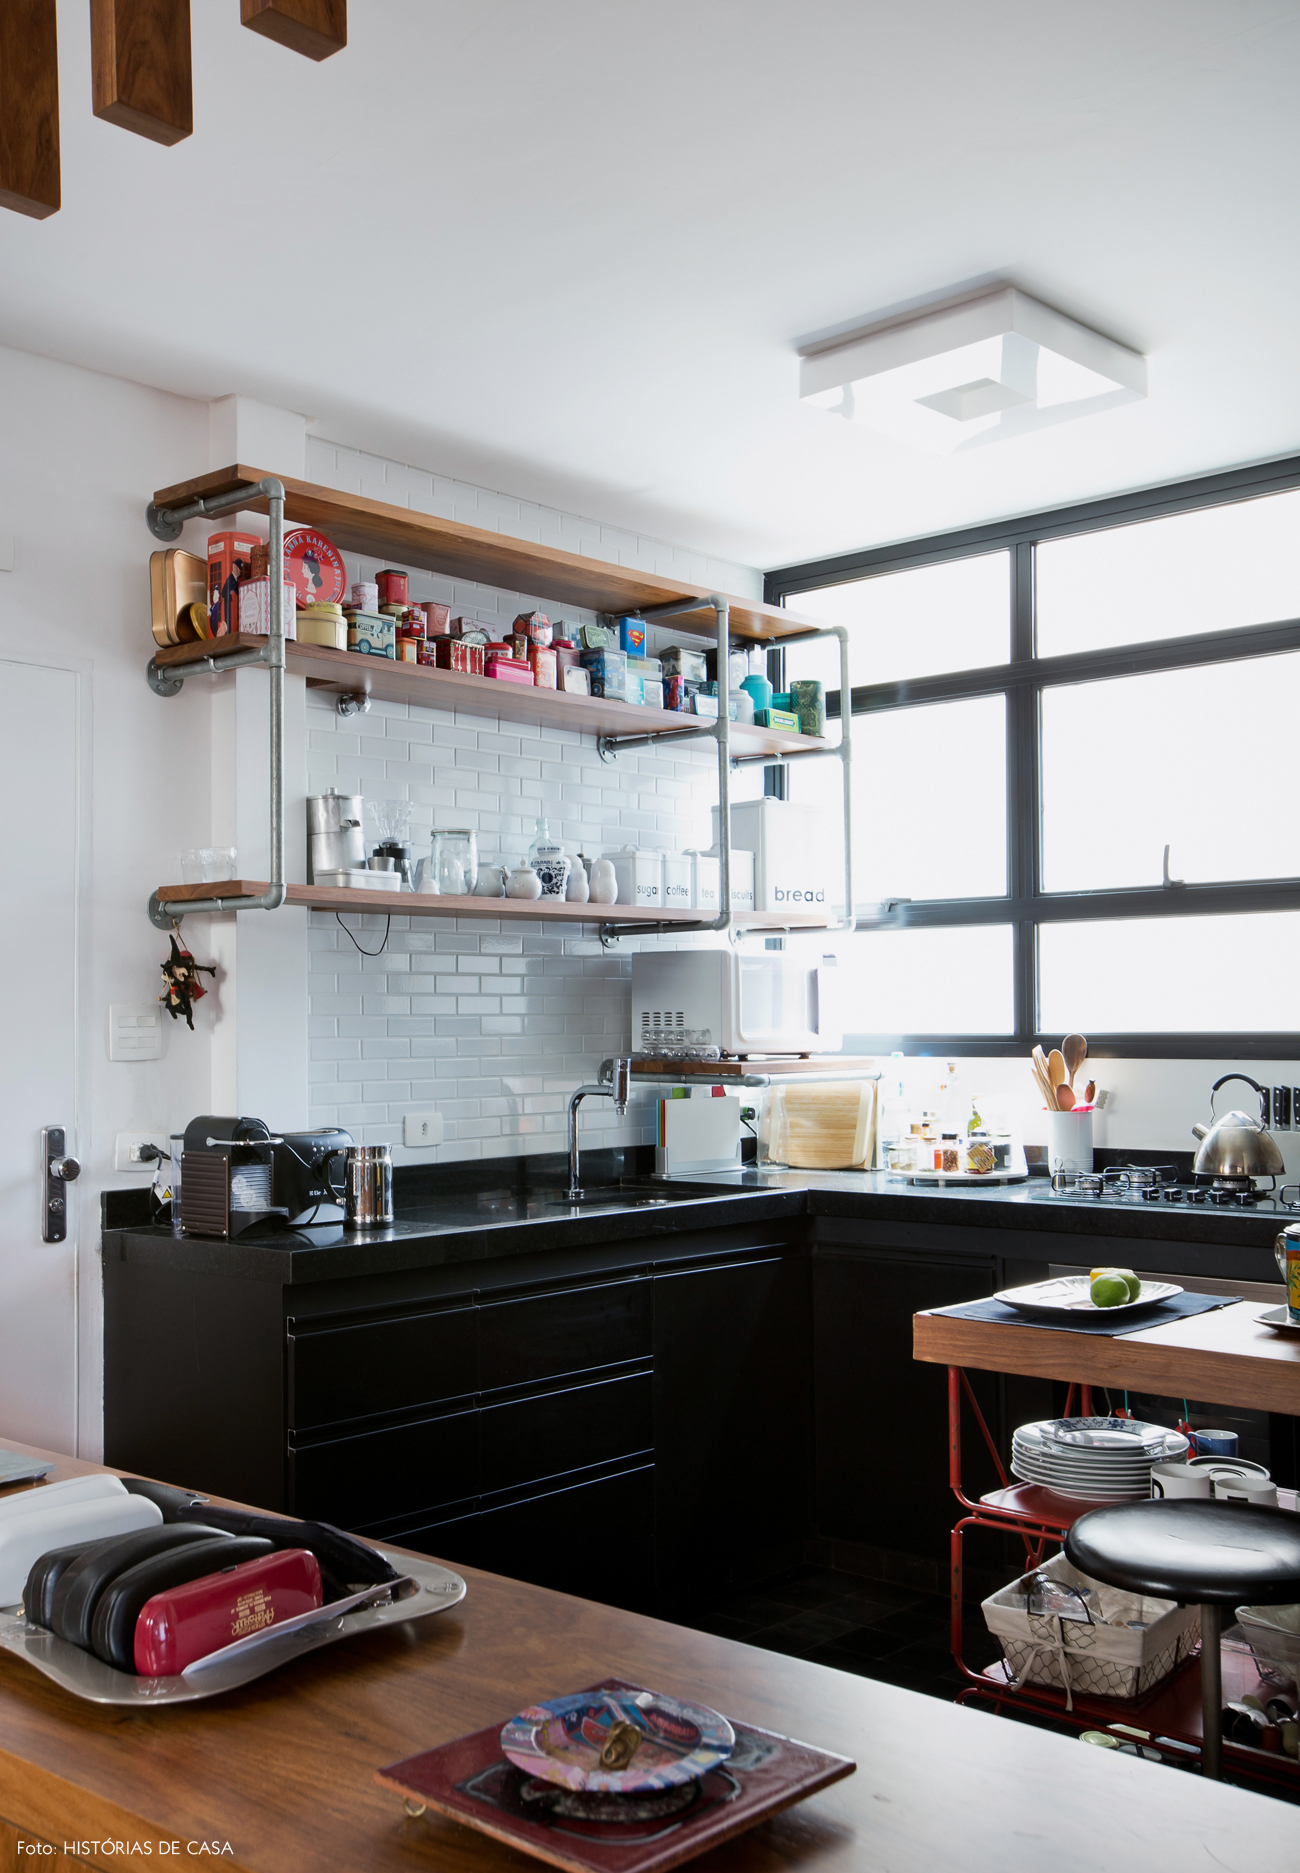 29-decoracao-cozinha-integrada-subway-tiles-brancos-estante-canos